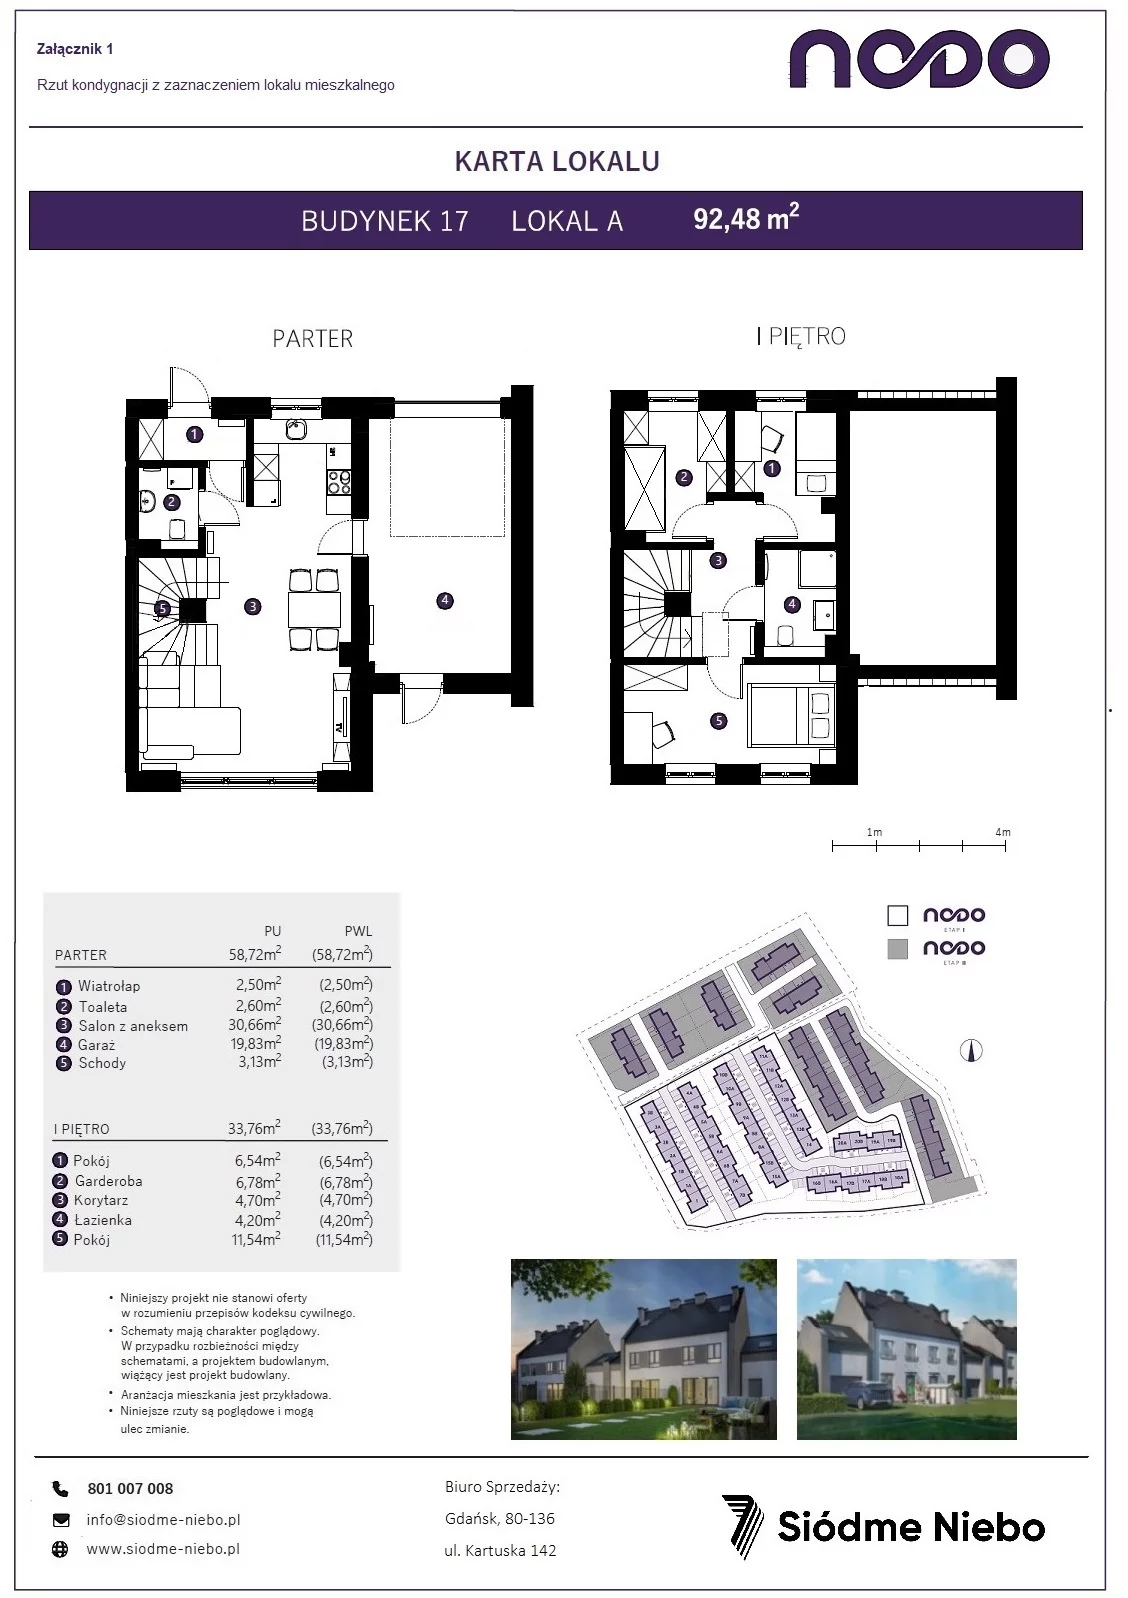 Mieszkanie 92,48 m², parter, oferta nr 17A, Osiedle Nodo, Gdańsk, Jasień, ul. Lubowidzka